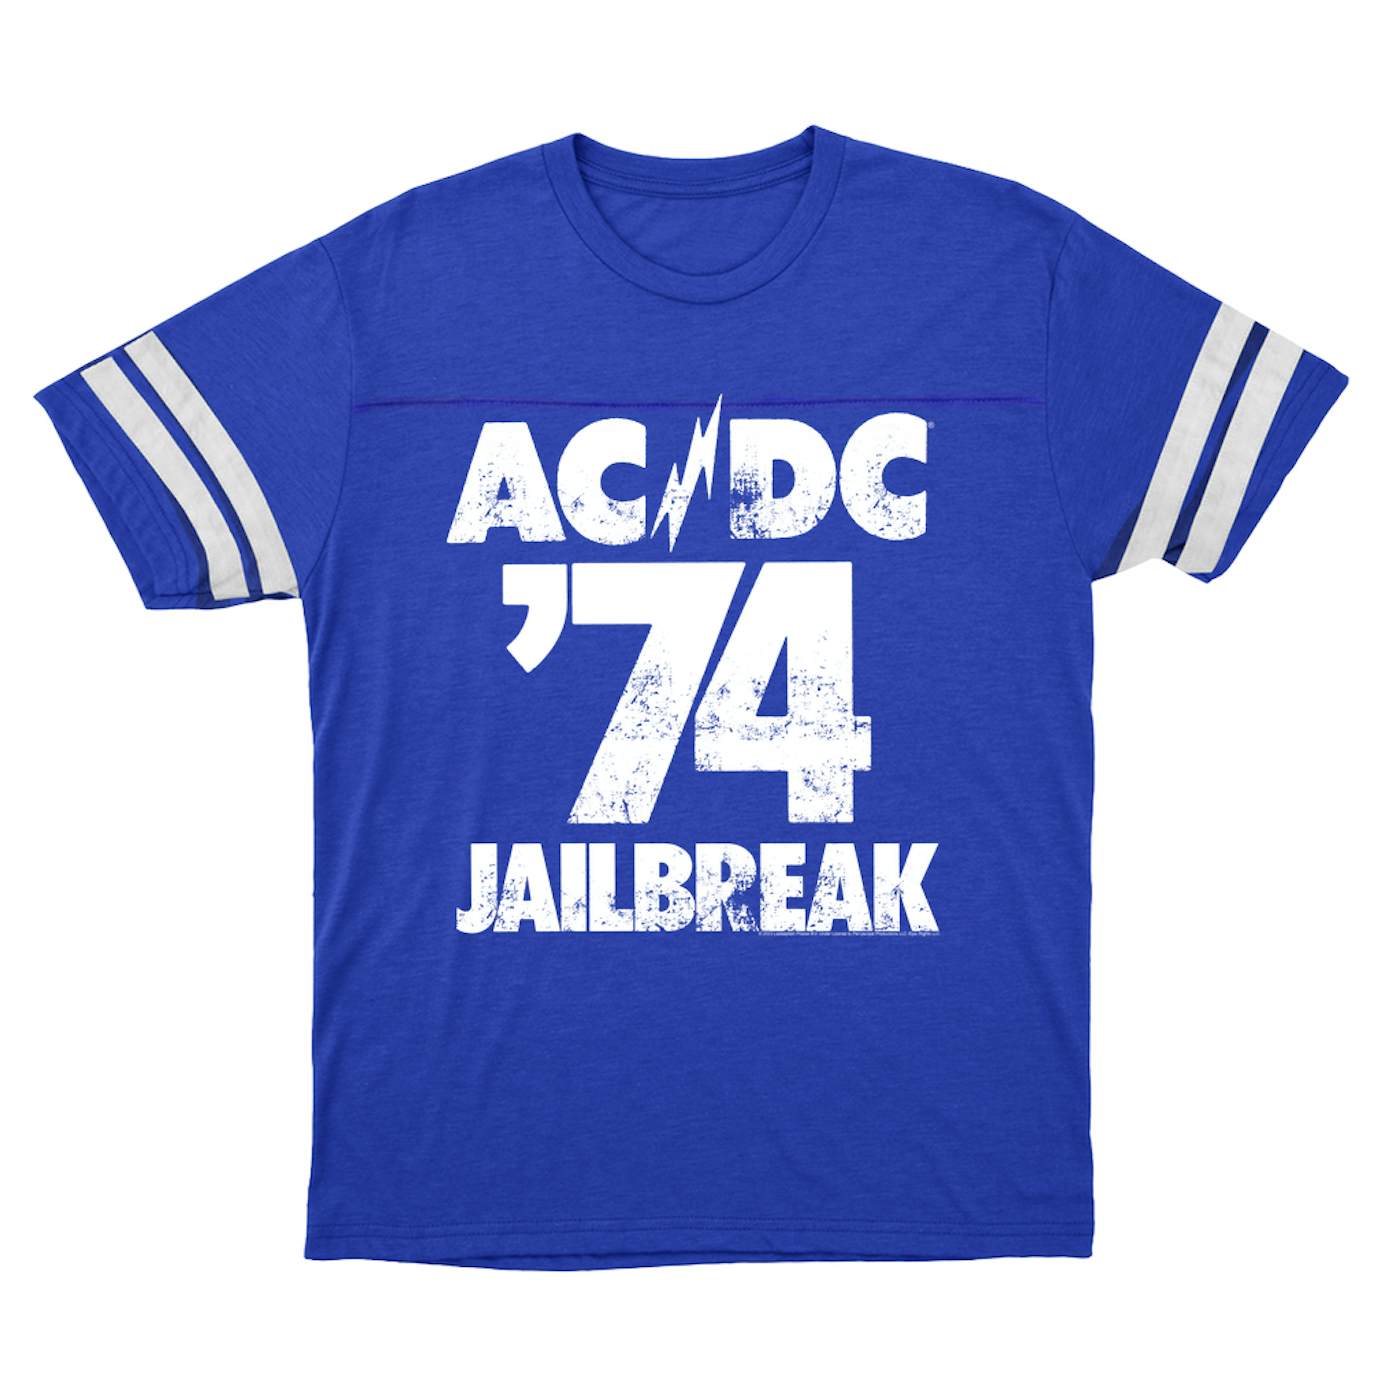 Ac/Dc - 74 Jailbreak -  Music